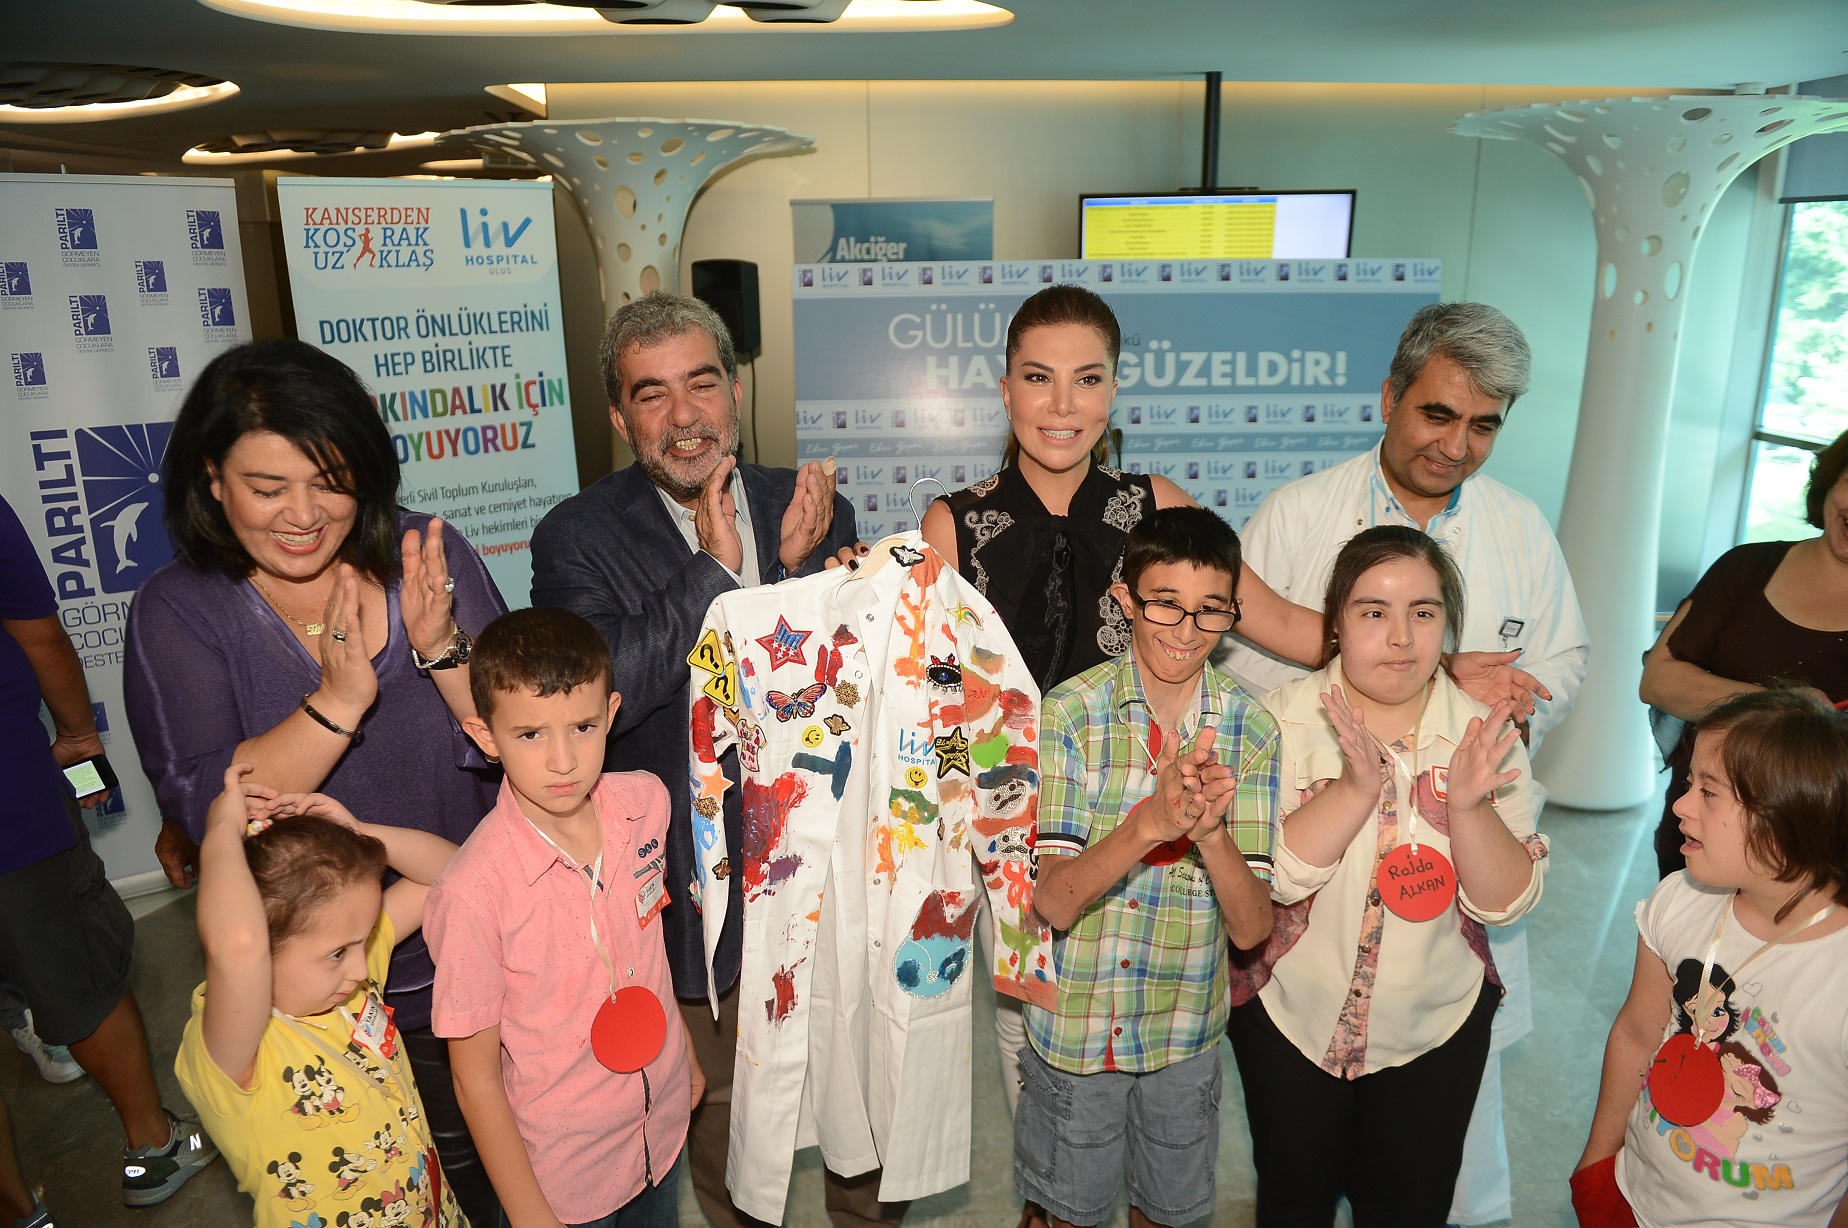 Ünlü sanatçı Ebru Yaşar ile görme engelli çocukların geleceği renkleniyor-2399